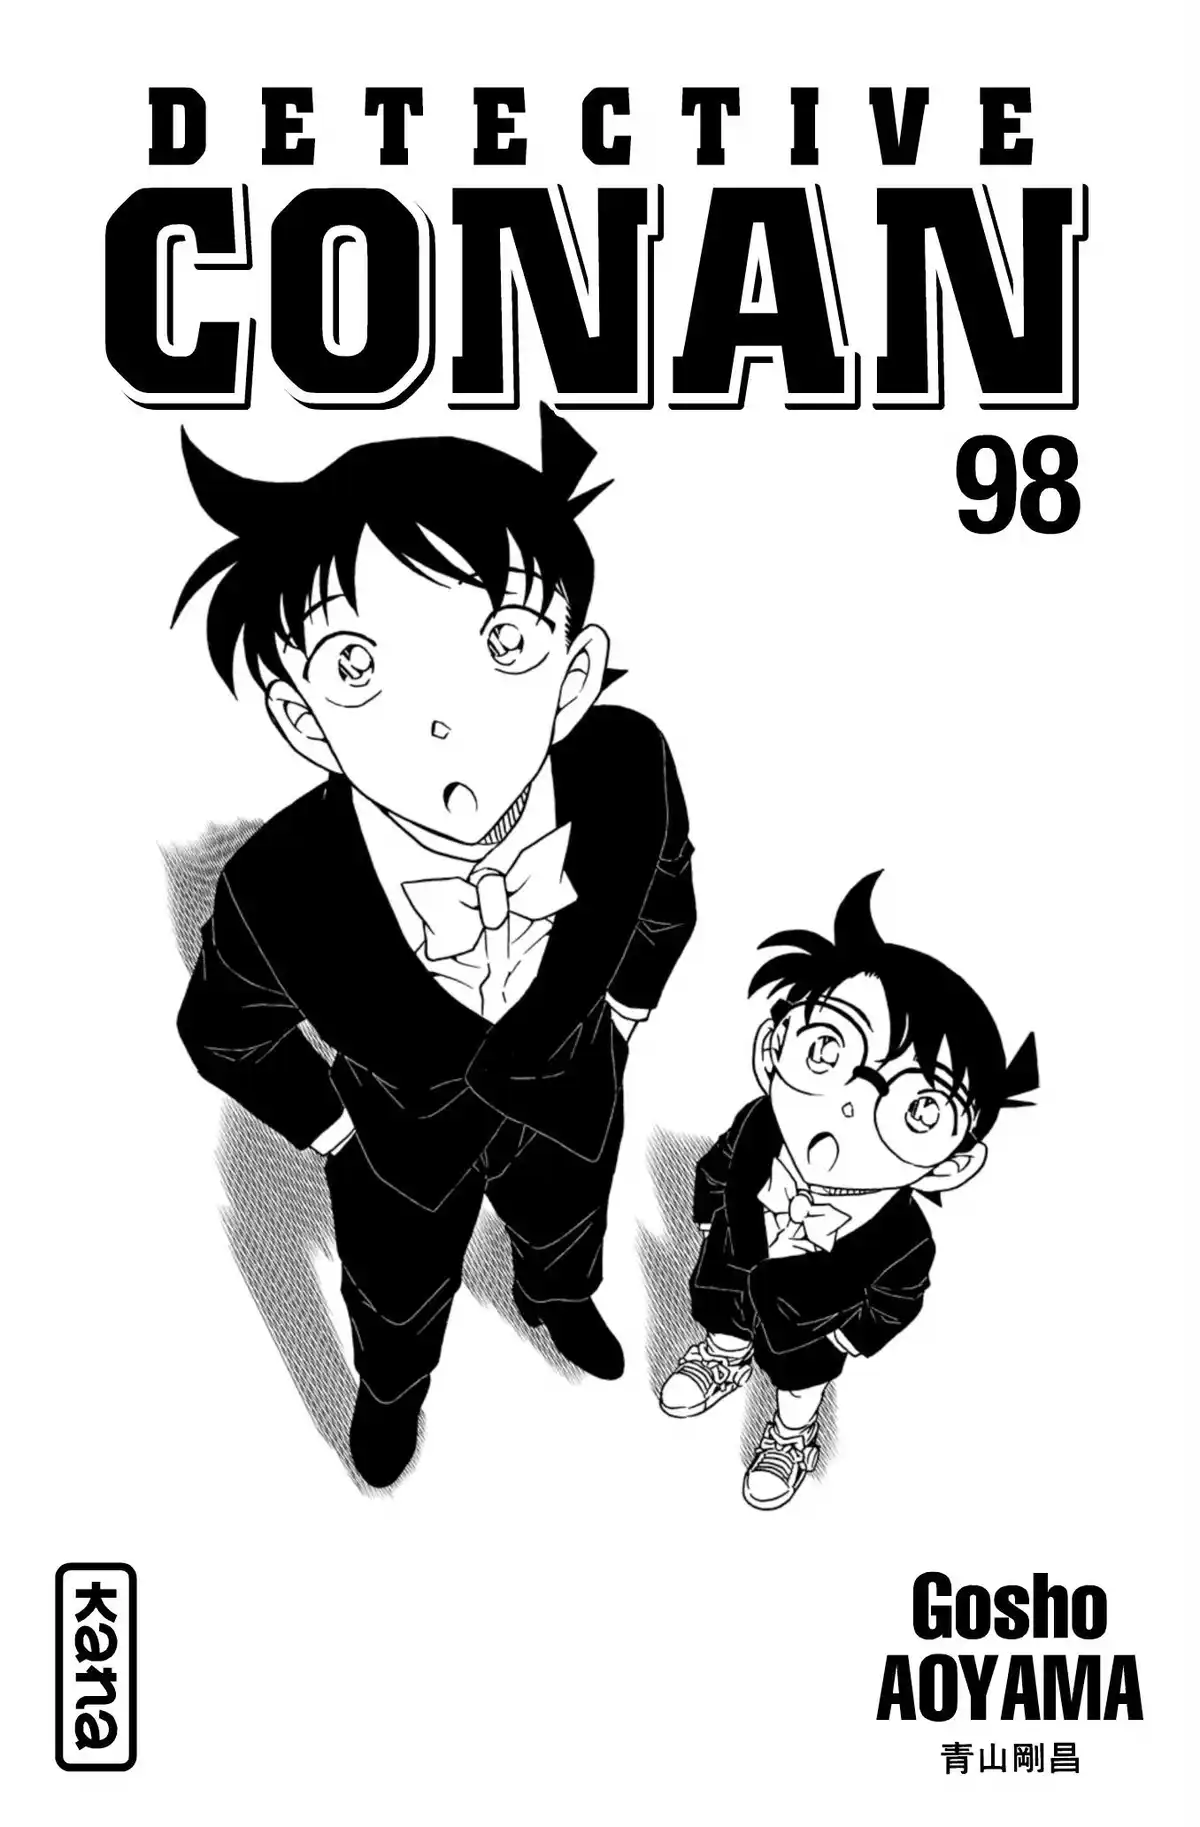 Détective Conan Volume 98 page 2